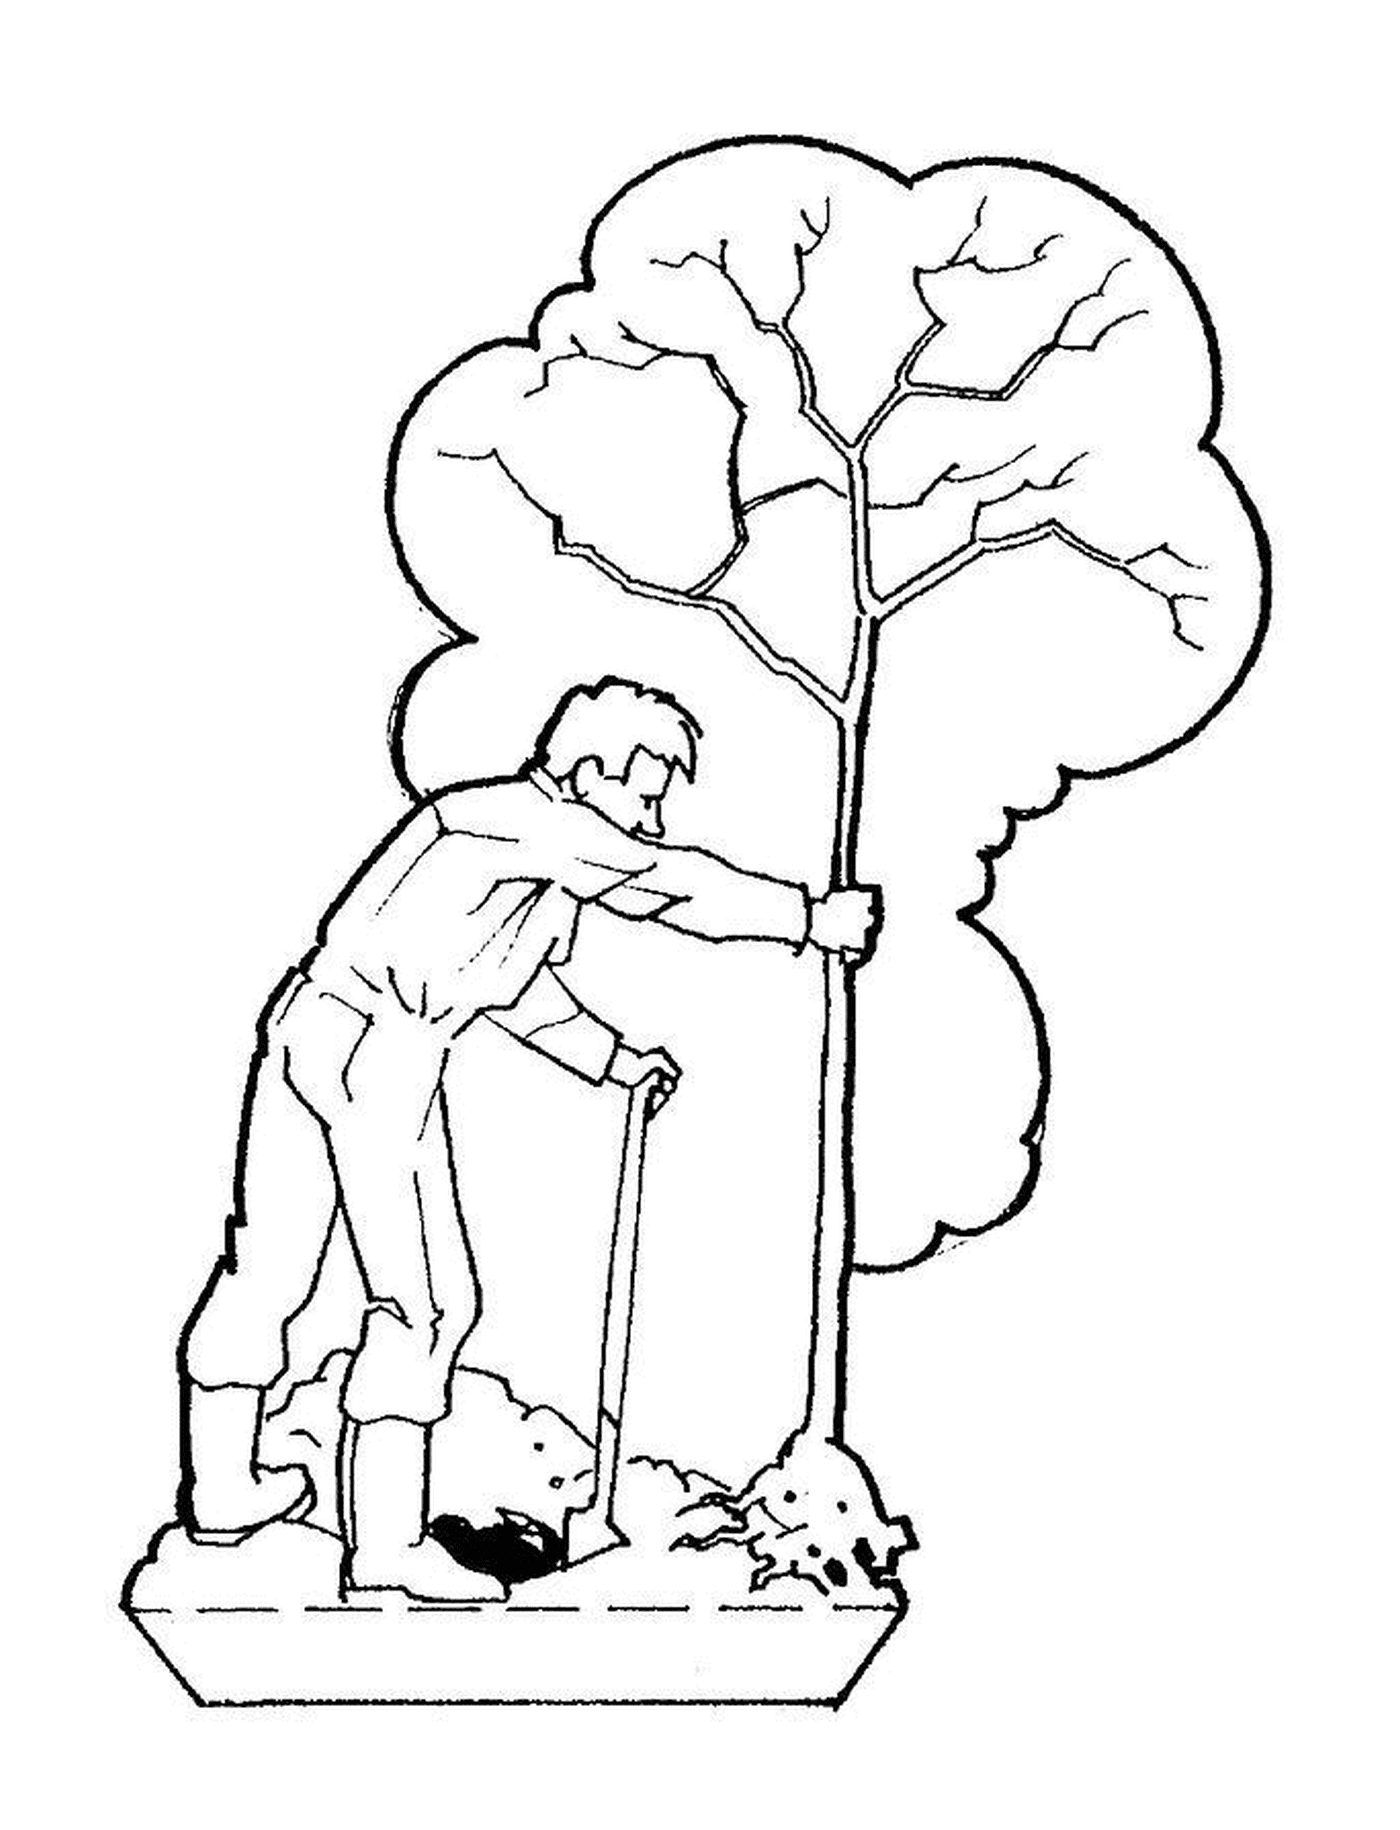   Un homme taille un arbre avec un bâton 